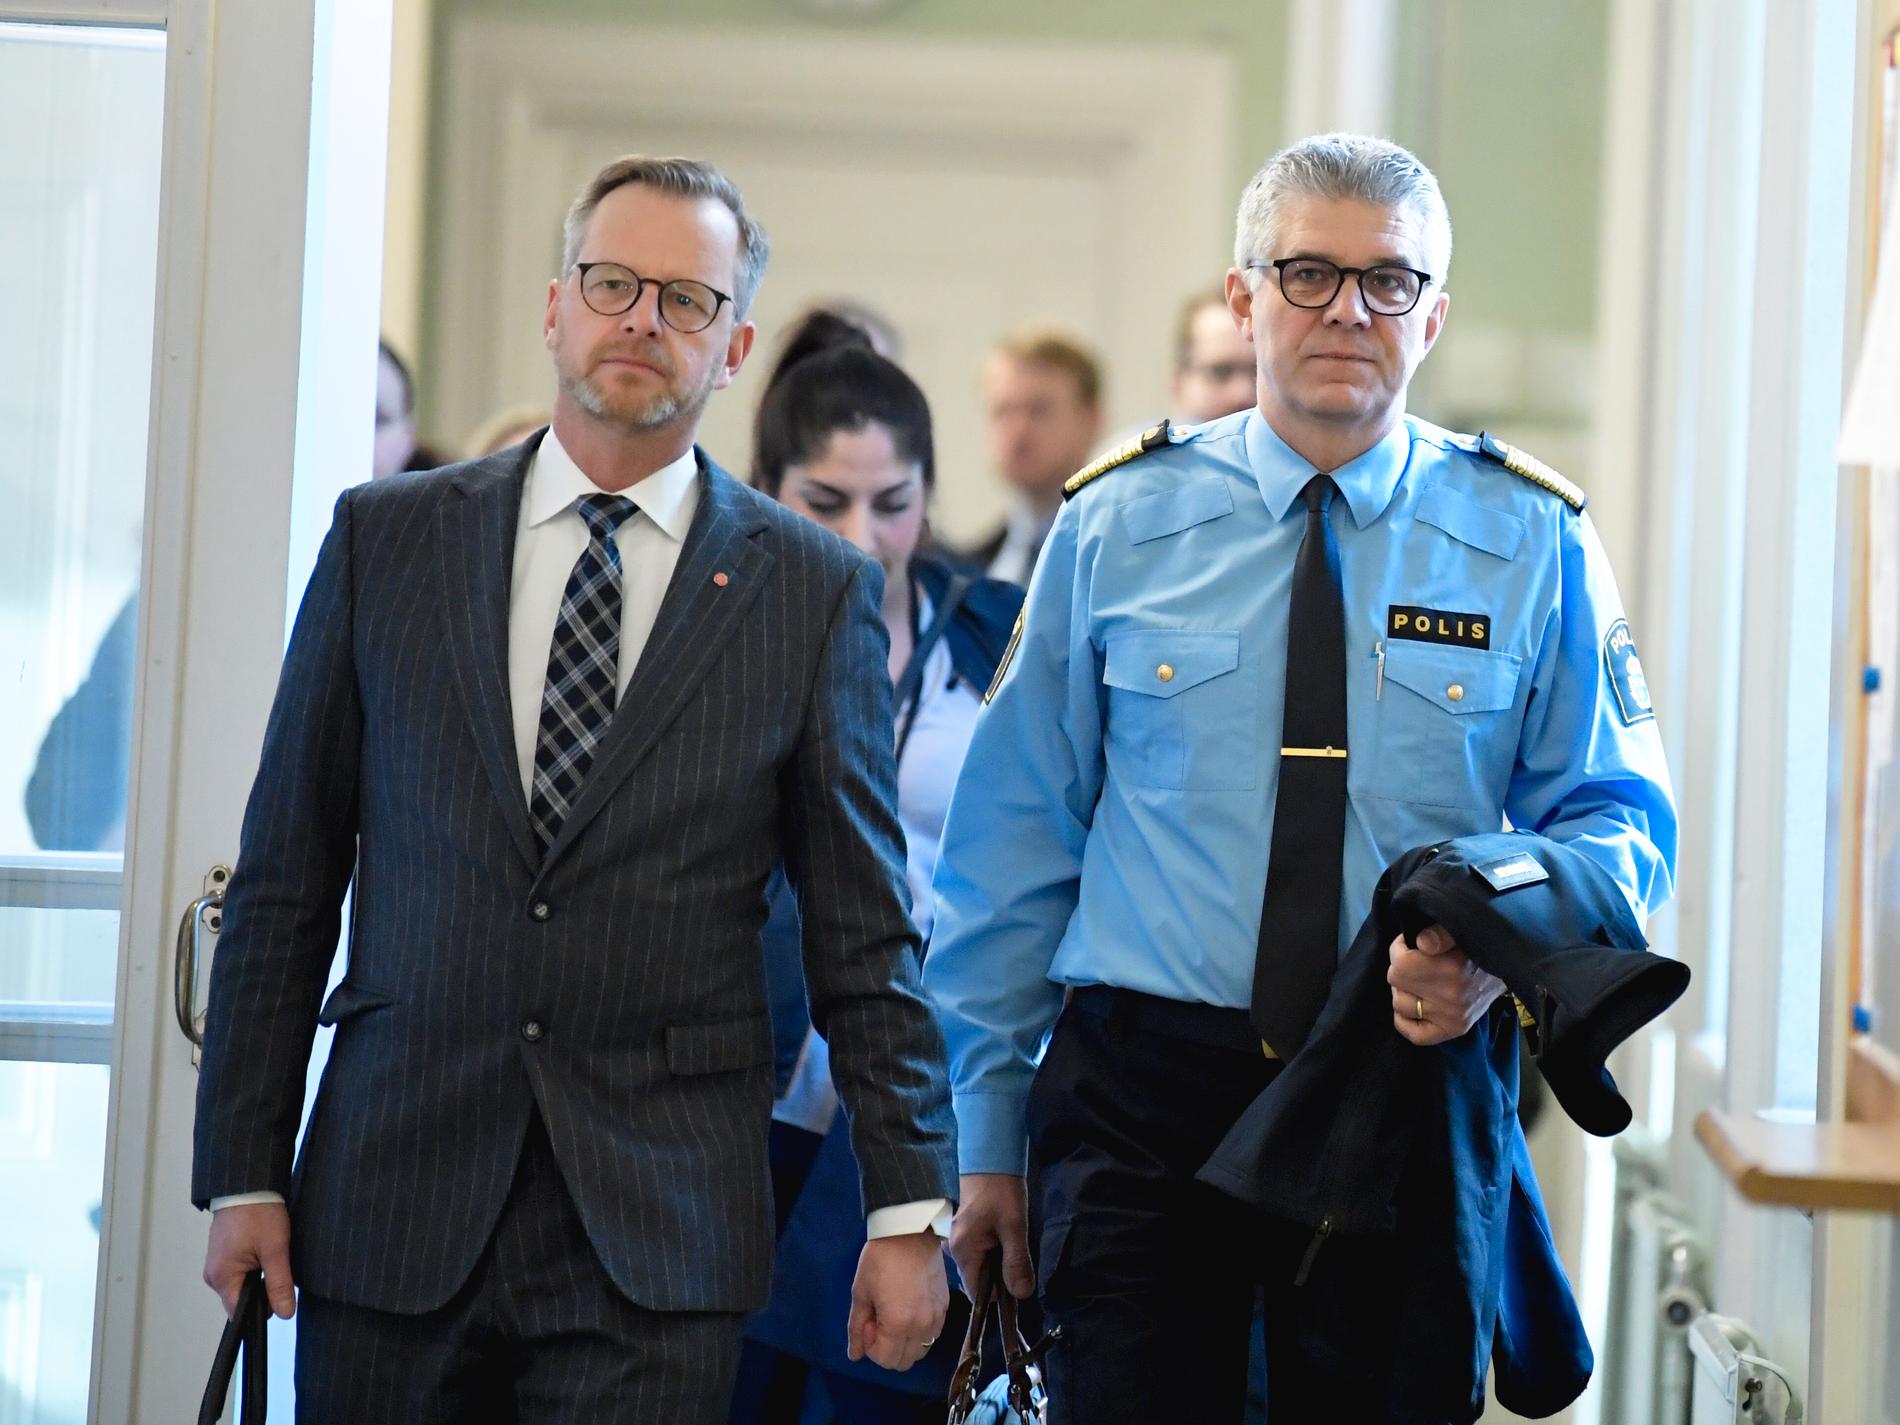 Inrikesminister Mikael Damberg (S) och Rikspolischef Anders Thornberg anländer till justitieutskottets möte i riksdagen.